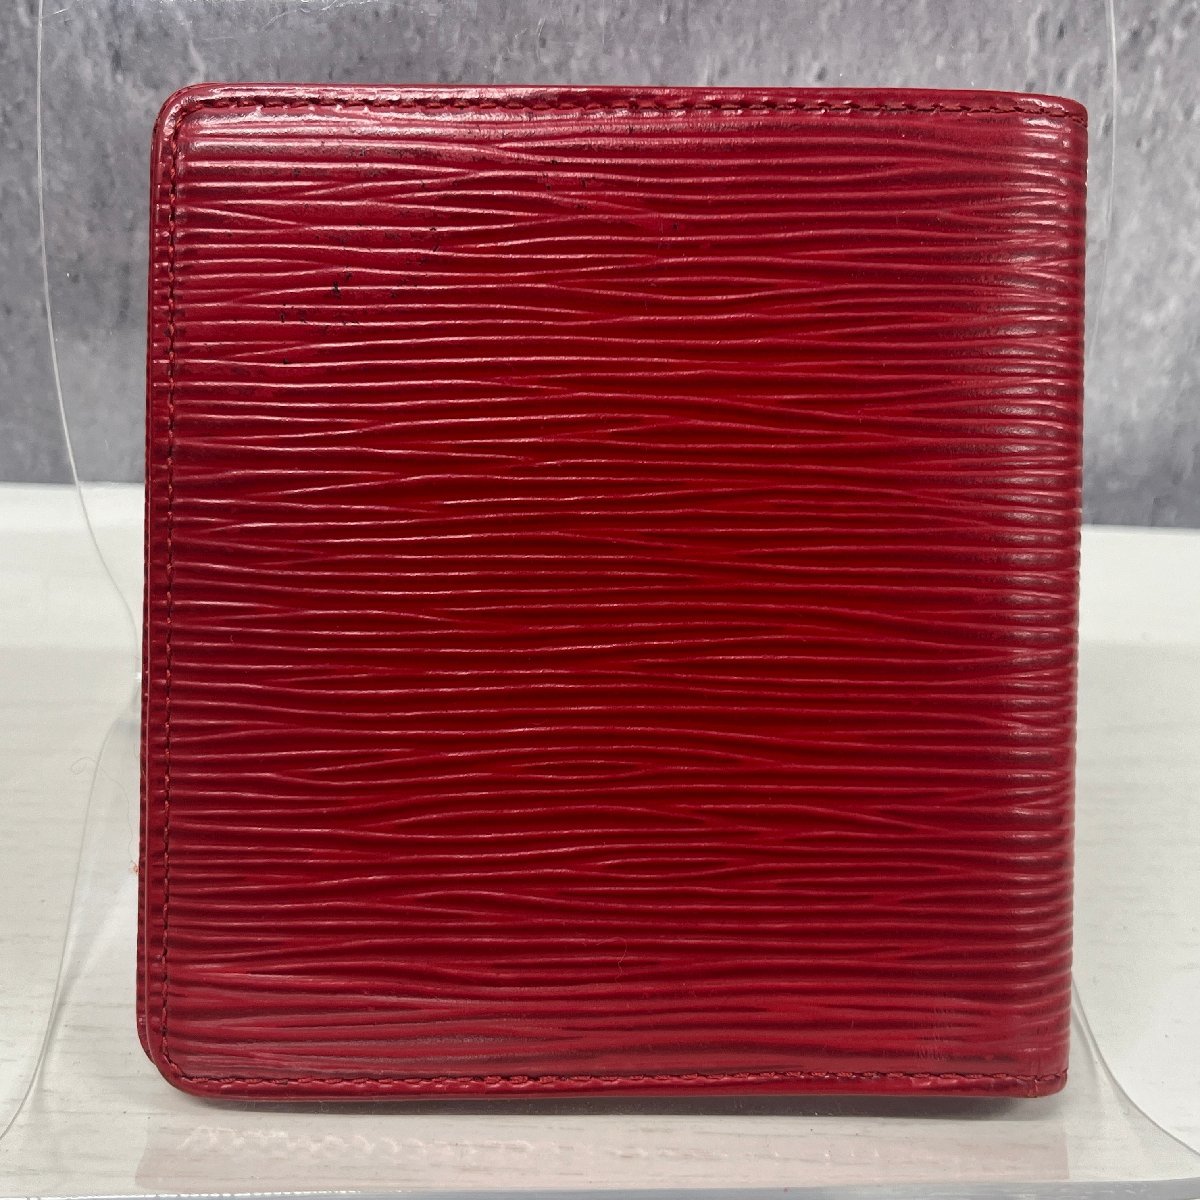 ◎M196 Louis Vuitton エピ ポルトビエ6カルトクレディ エピルージュ 二つ折り財布 (rt)_画像2